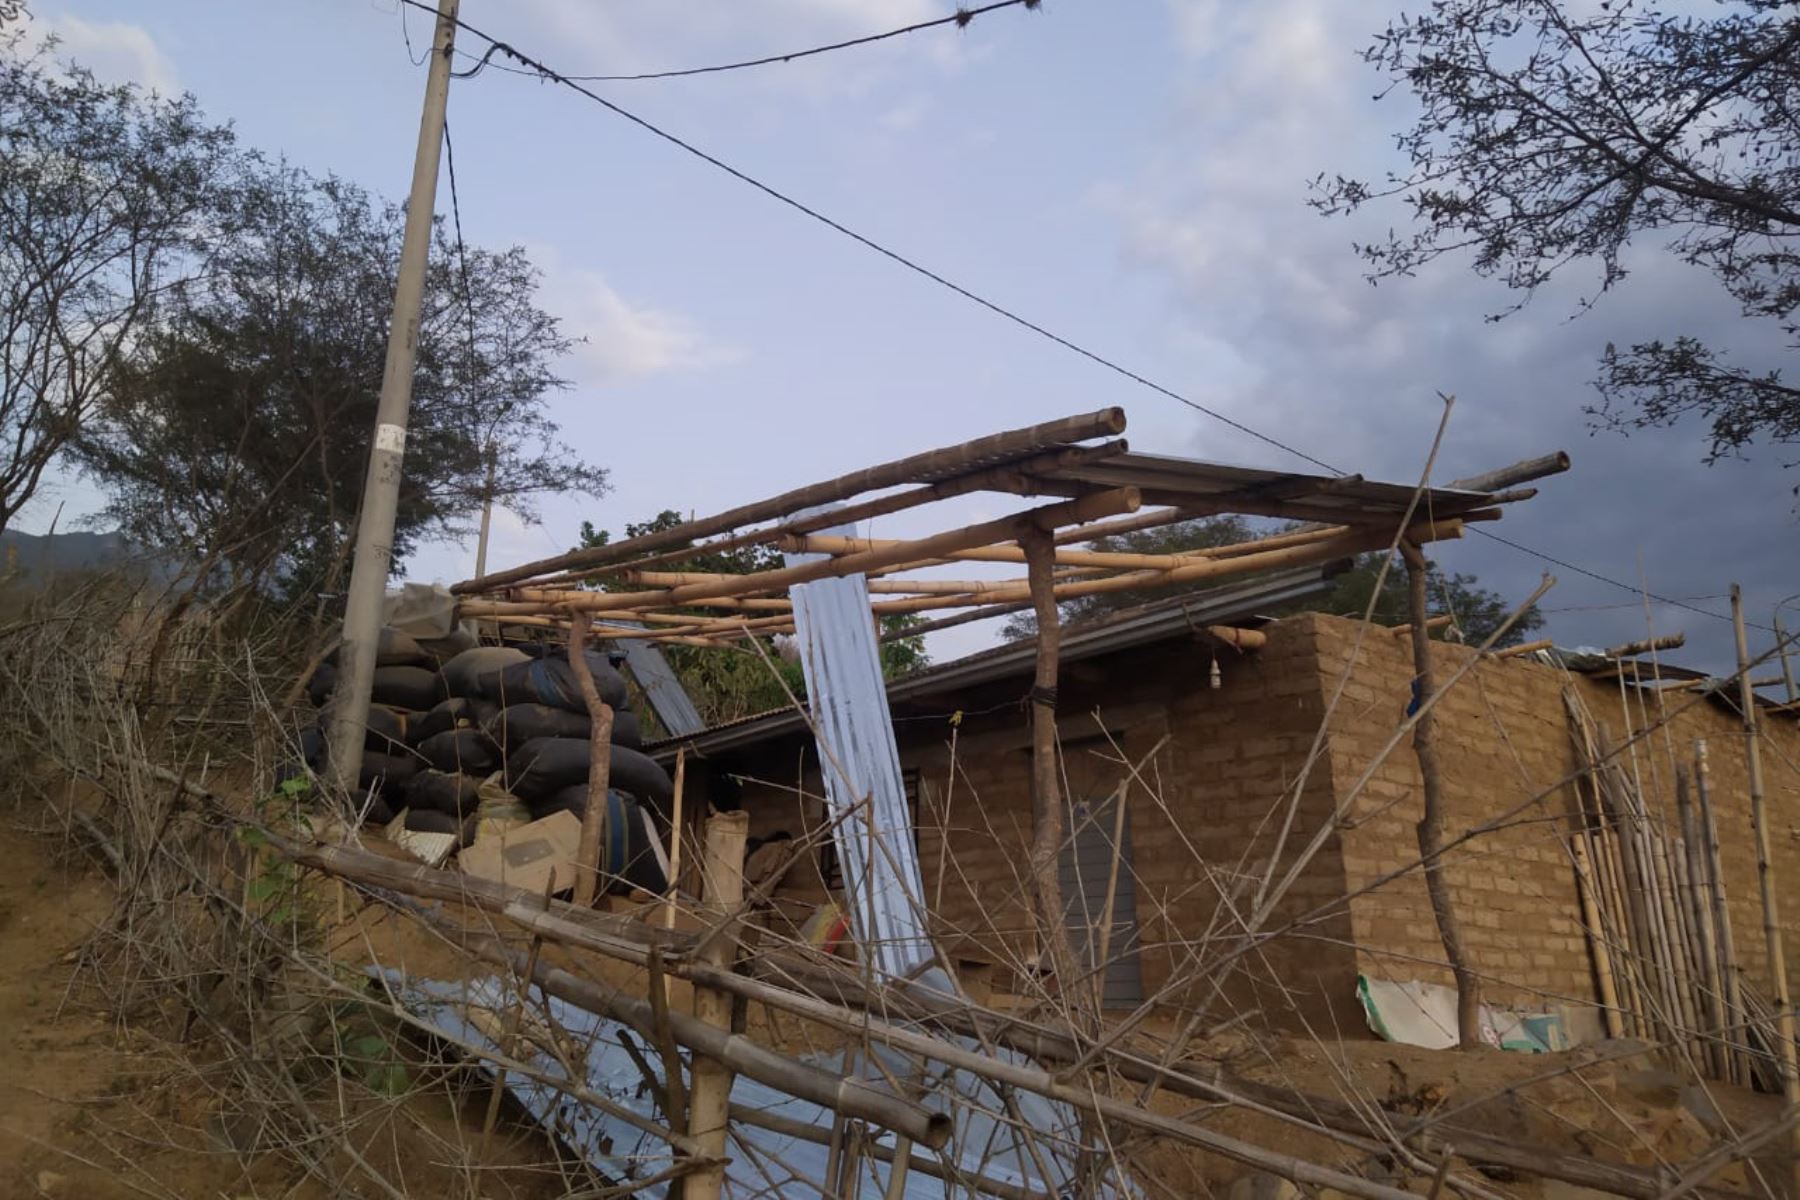 Vientos fuertes causan daños en al menos 30 viviendas de distrito de Oyotún, región Lambayeque. ANDINA/Difusión